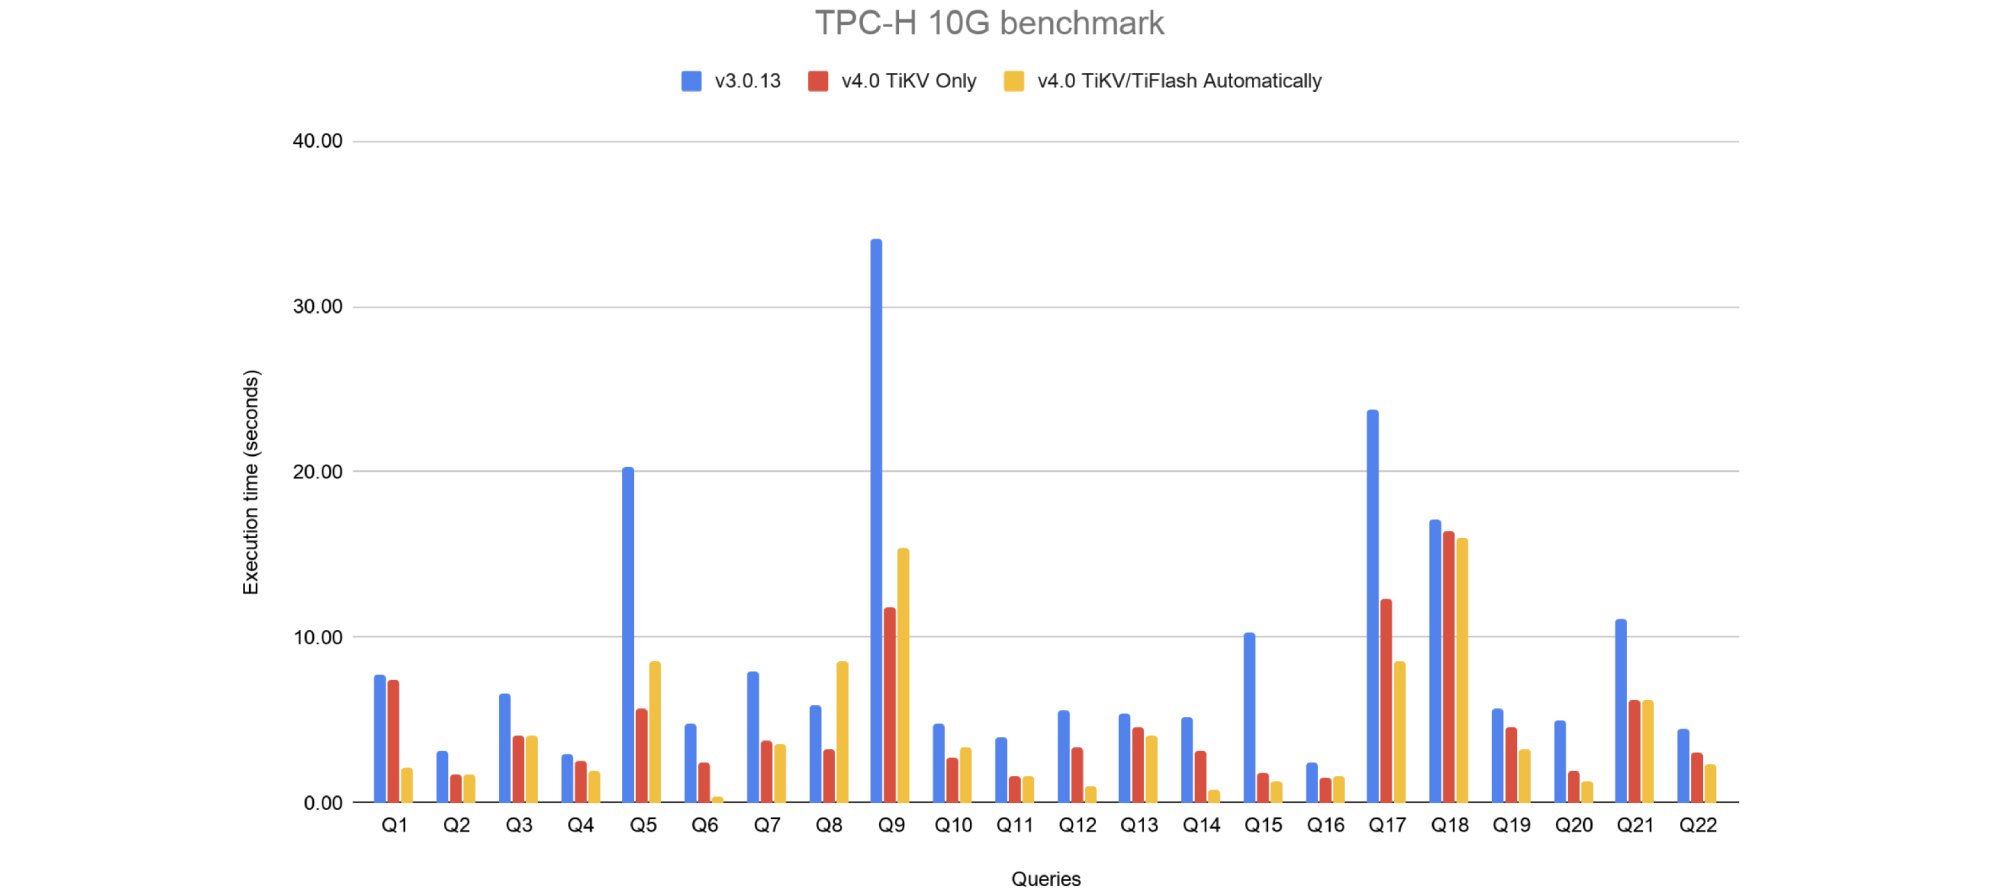 TiDB 3.0 vs. 4.0 for TPC-H